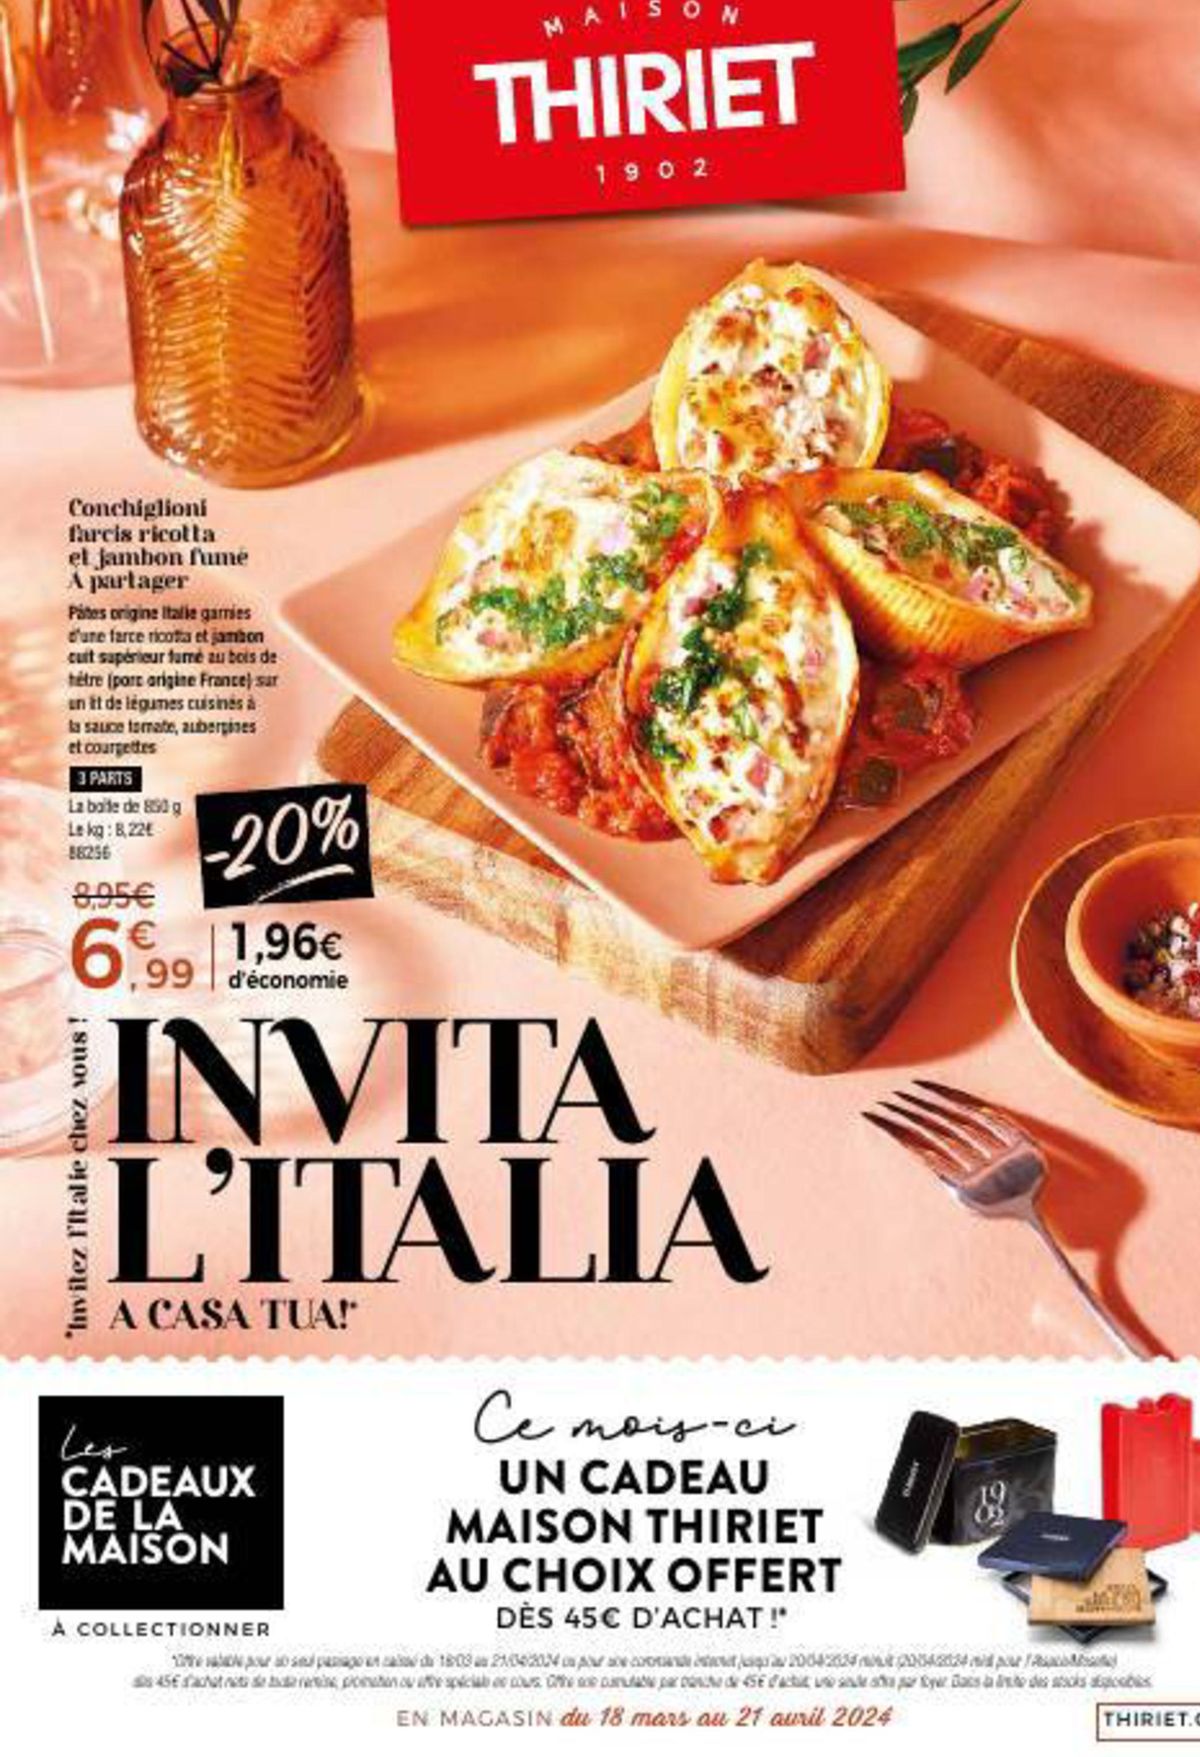 Catalogue Invita L'Italia A Casa Tua!, page 00001